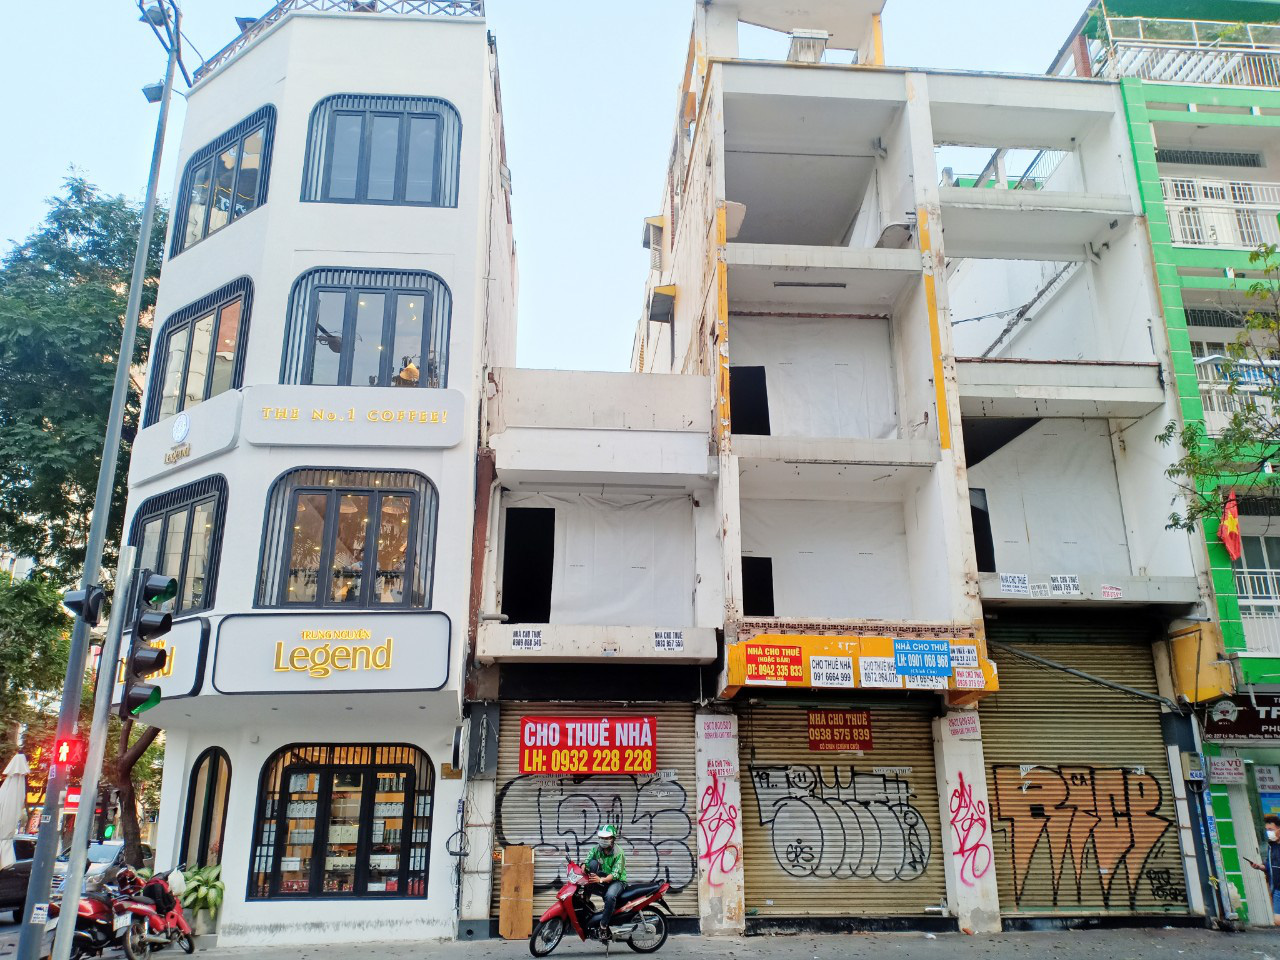 Mặt bằng nhà phố cho thuê trung tâm Sài Gòn đang phục hồi trở lại